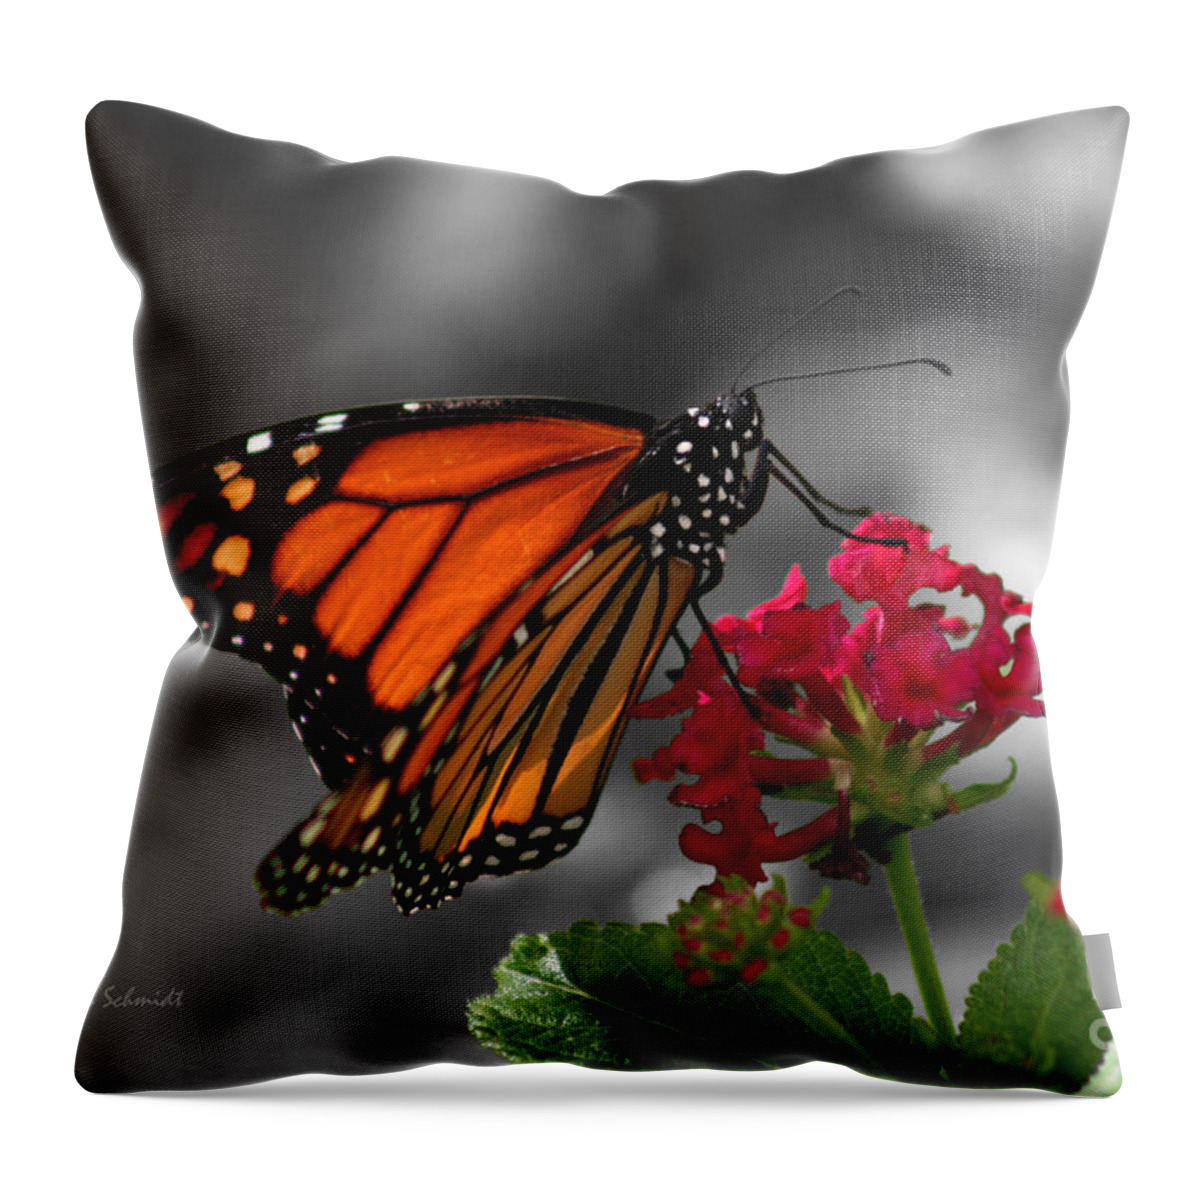 Butterfly Garden Throw Pillow featuring the photograph Butterfly Garden 01 - Monarch by E B Schmidt